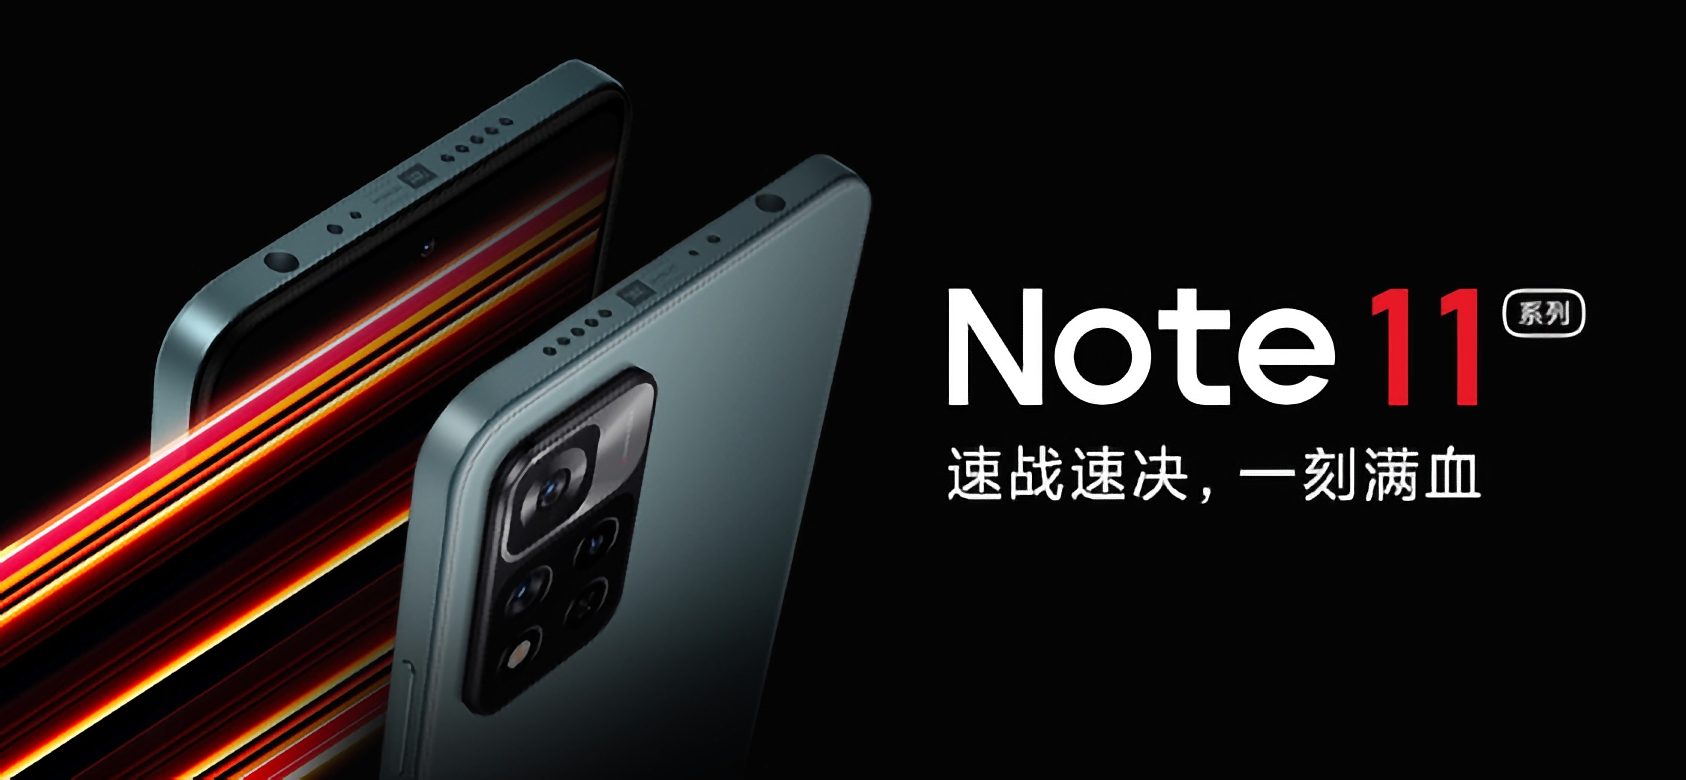 Le Redmi Note 11 sera équipé du Dimensity 810, d'un appareil photo de 50 Mpx et coûtera à partir de 190 $